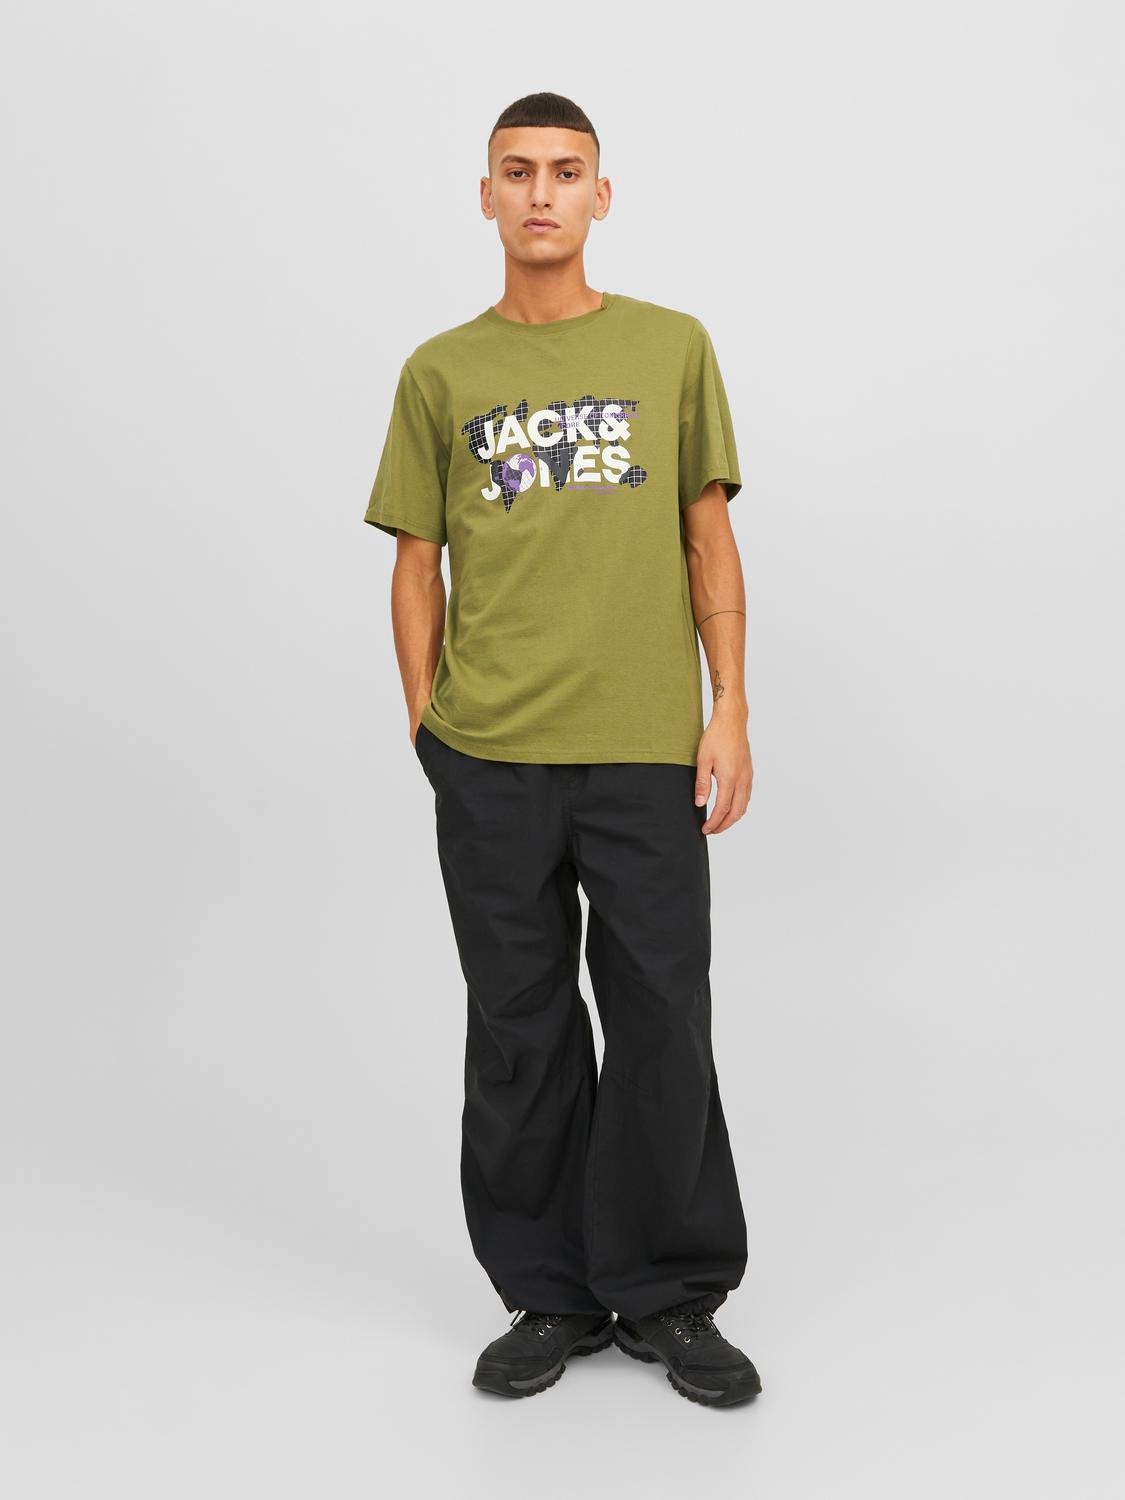 Jack & Jones Z logo Okrągły dekolt T-shirt -Olive Branch - 12240276